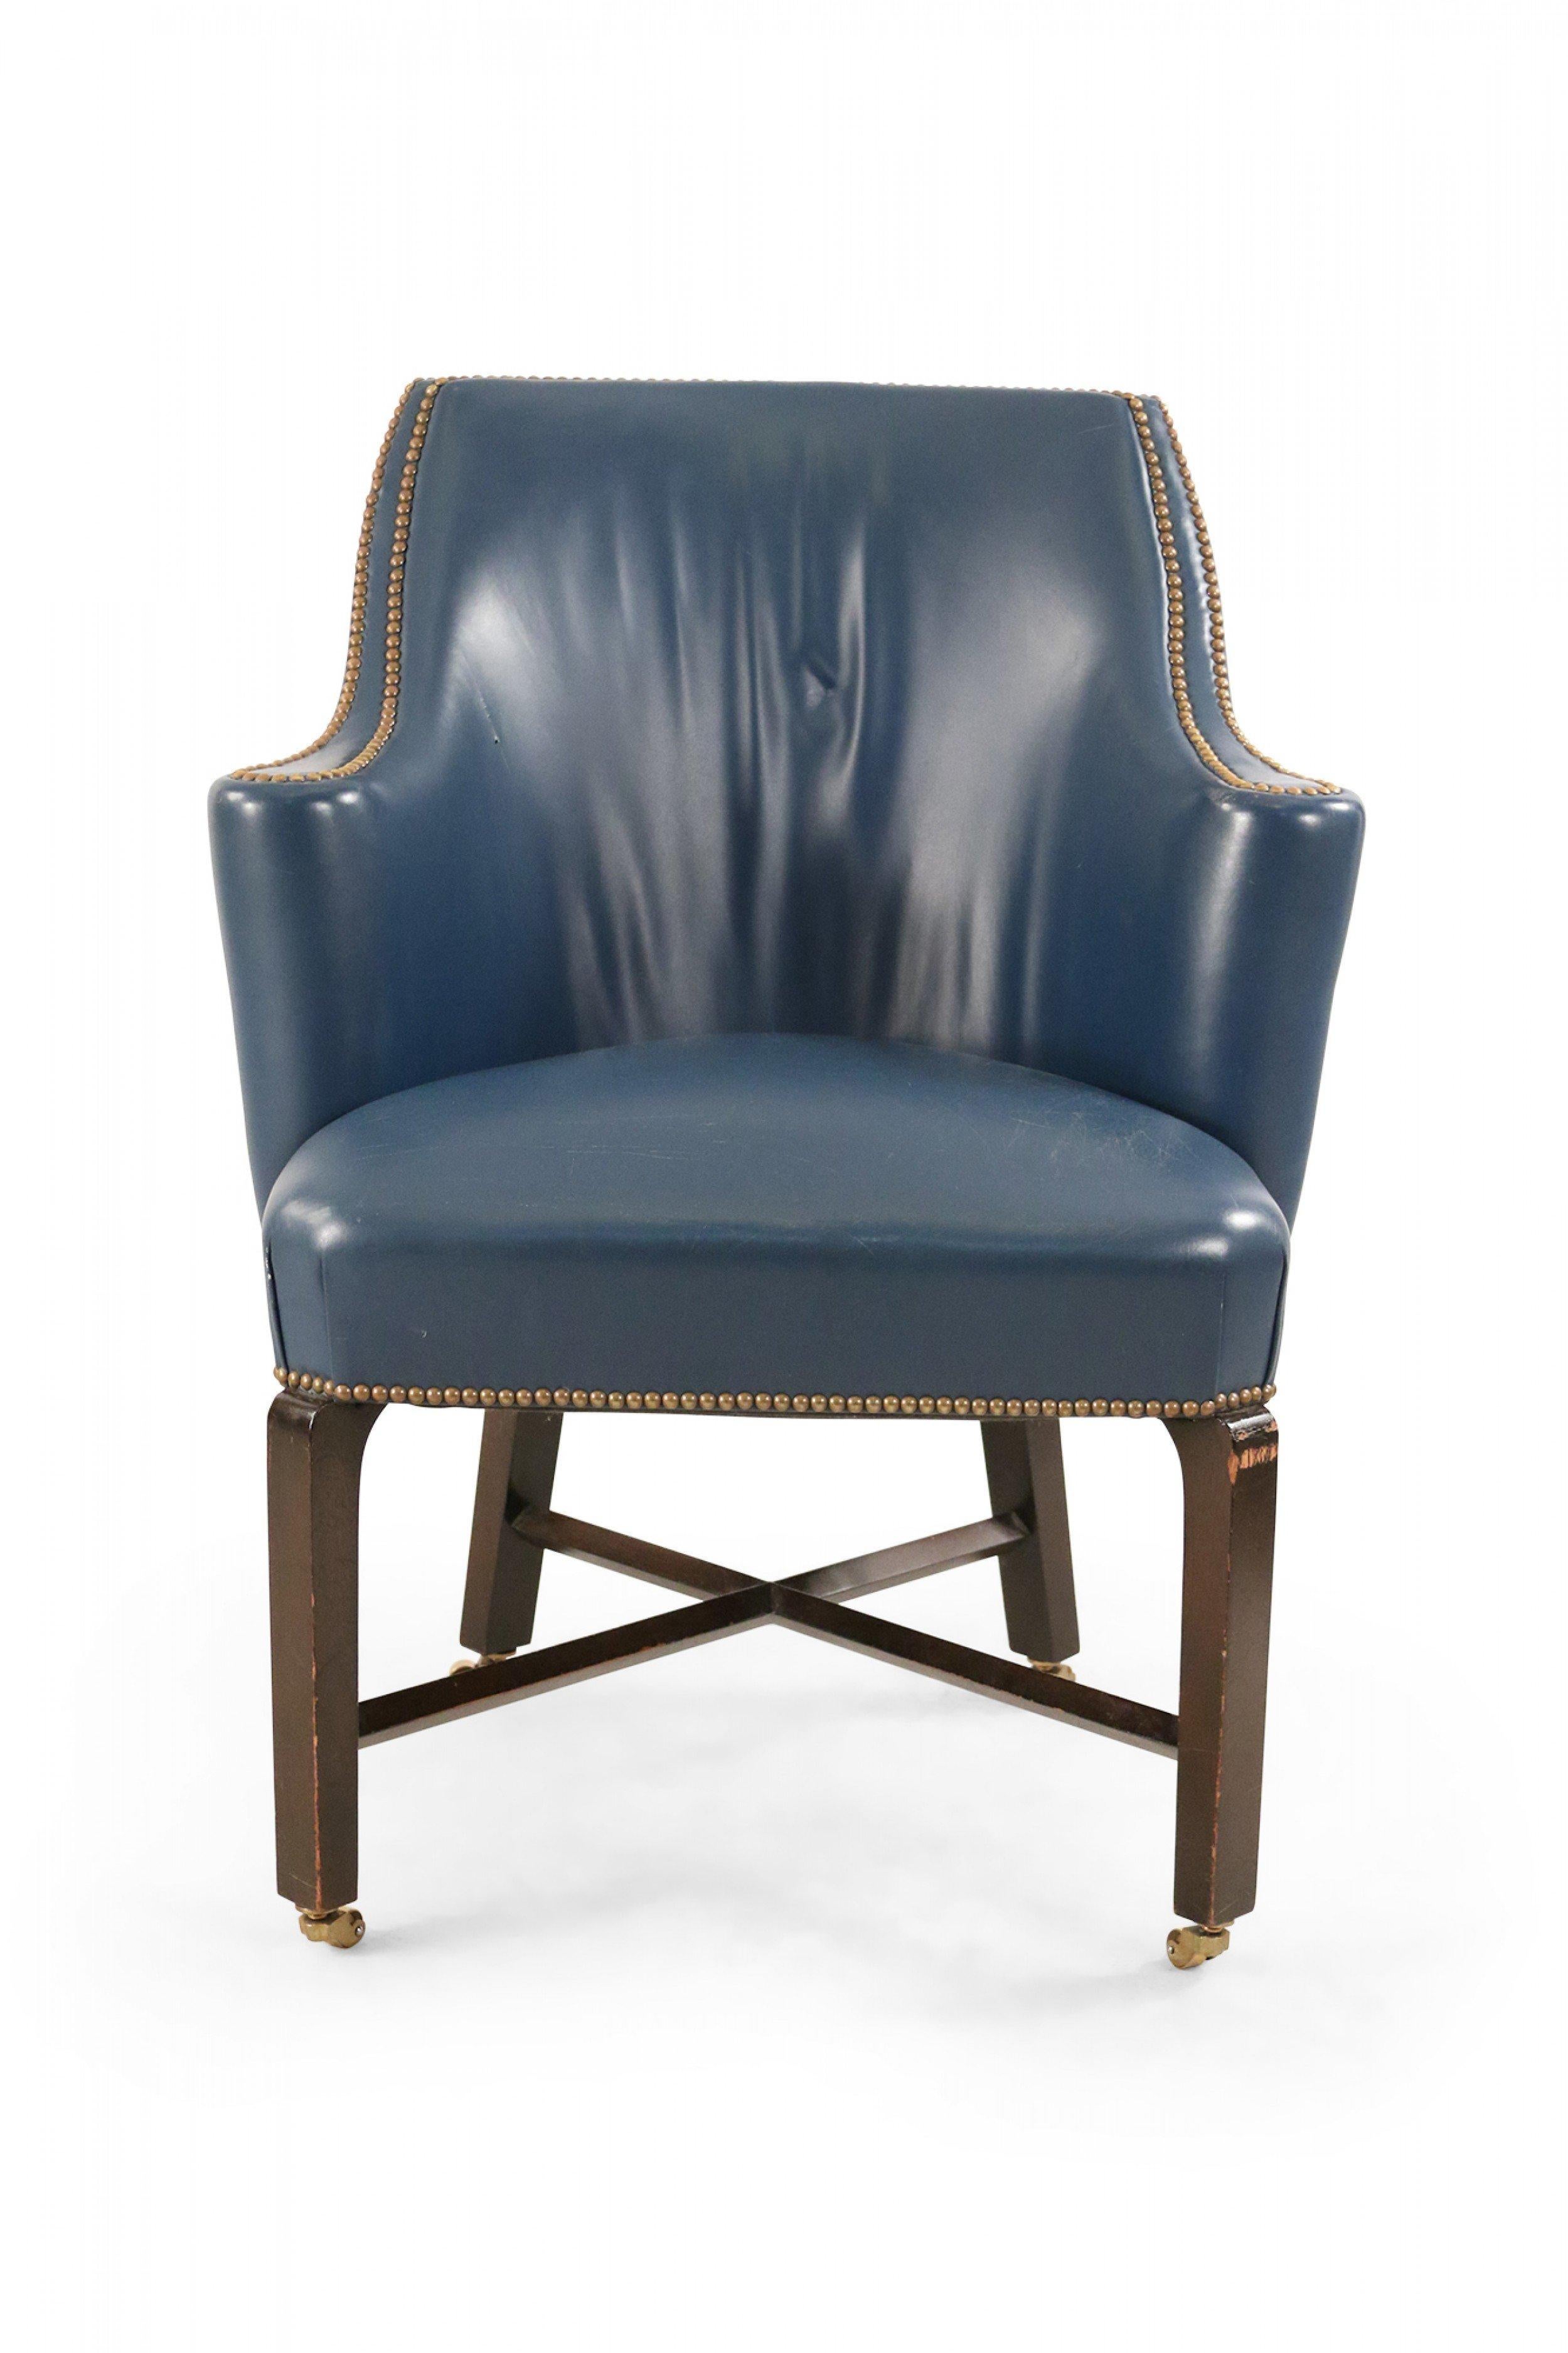 Zeitgenössischer Club-/Sessel aus blauem Leder mit abgerundeter Rückenlehne, schwarz lackierten Holzbeinen auf kleinen Rollen mit einer x-förmigen Streckung und Messingnägeln in der Polsterung.